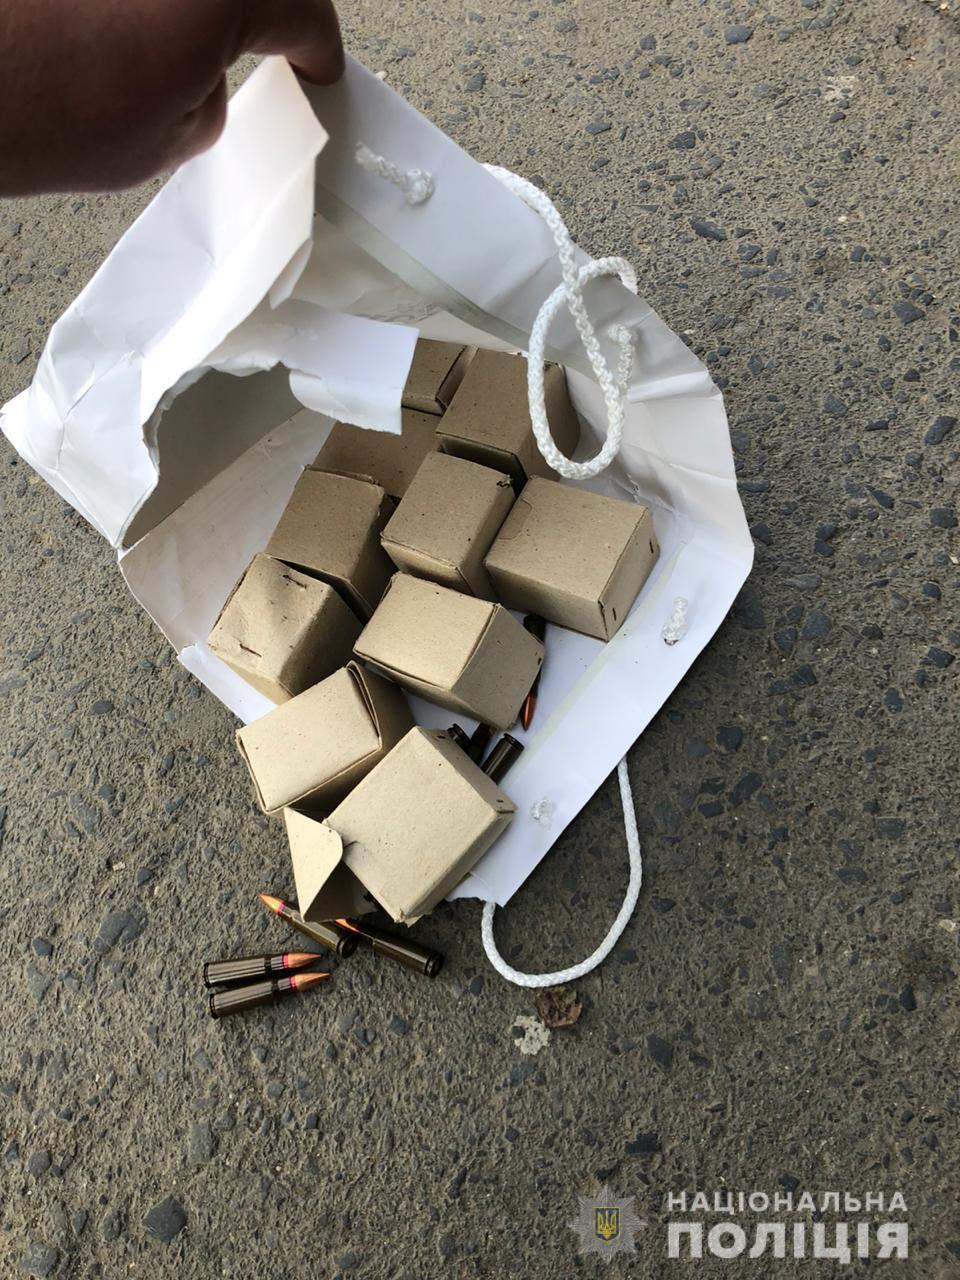 У мешканця Ужгорода поліція знайшла цілий "арсенал" бойових патронів